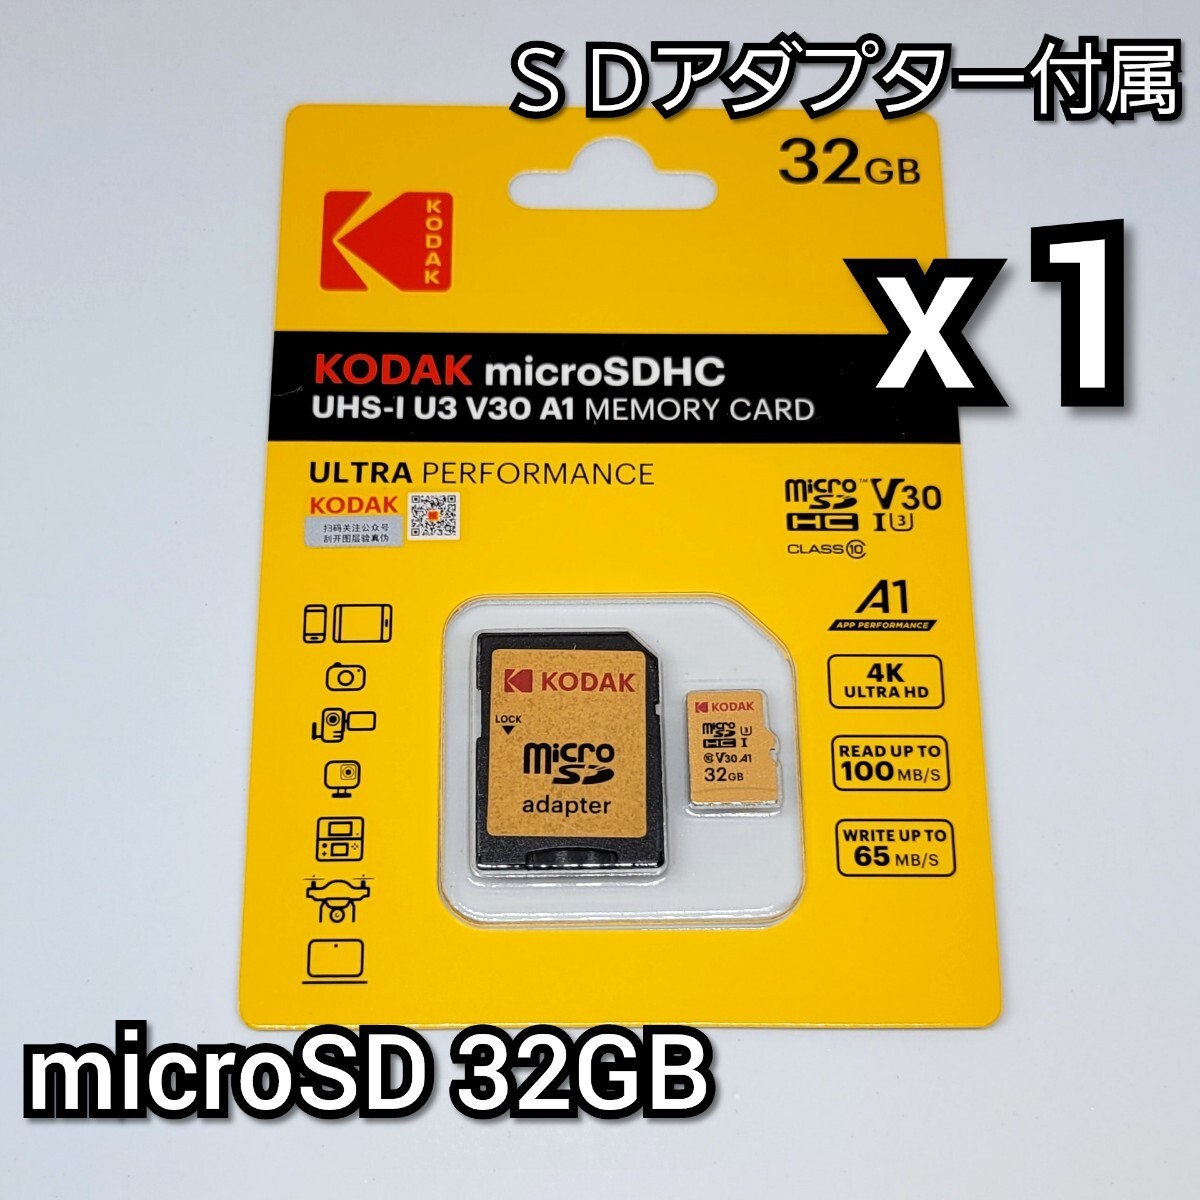 [ бесплатная доставка ] микро SD карта 32GB 1 листов ko Duck конверсионный адаптор class10 UHS-I 1 шт microSD microSDHC микро SD KODAK высокая скорость 